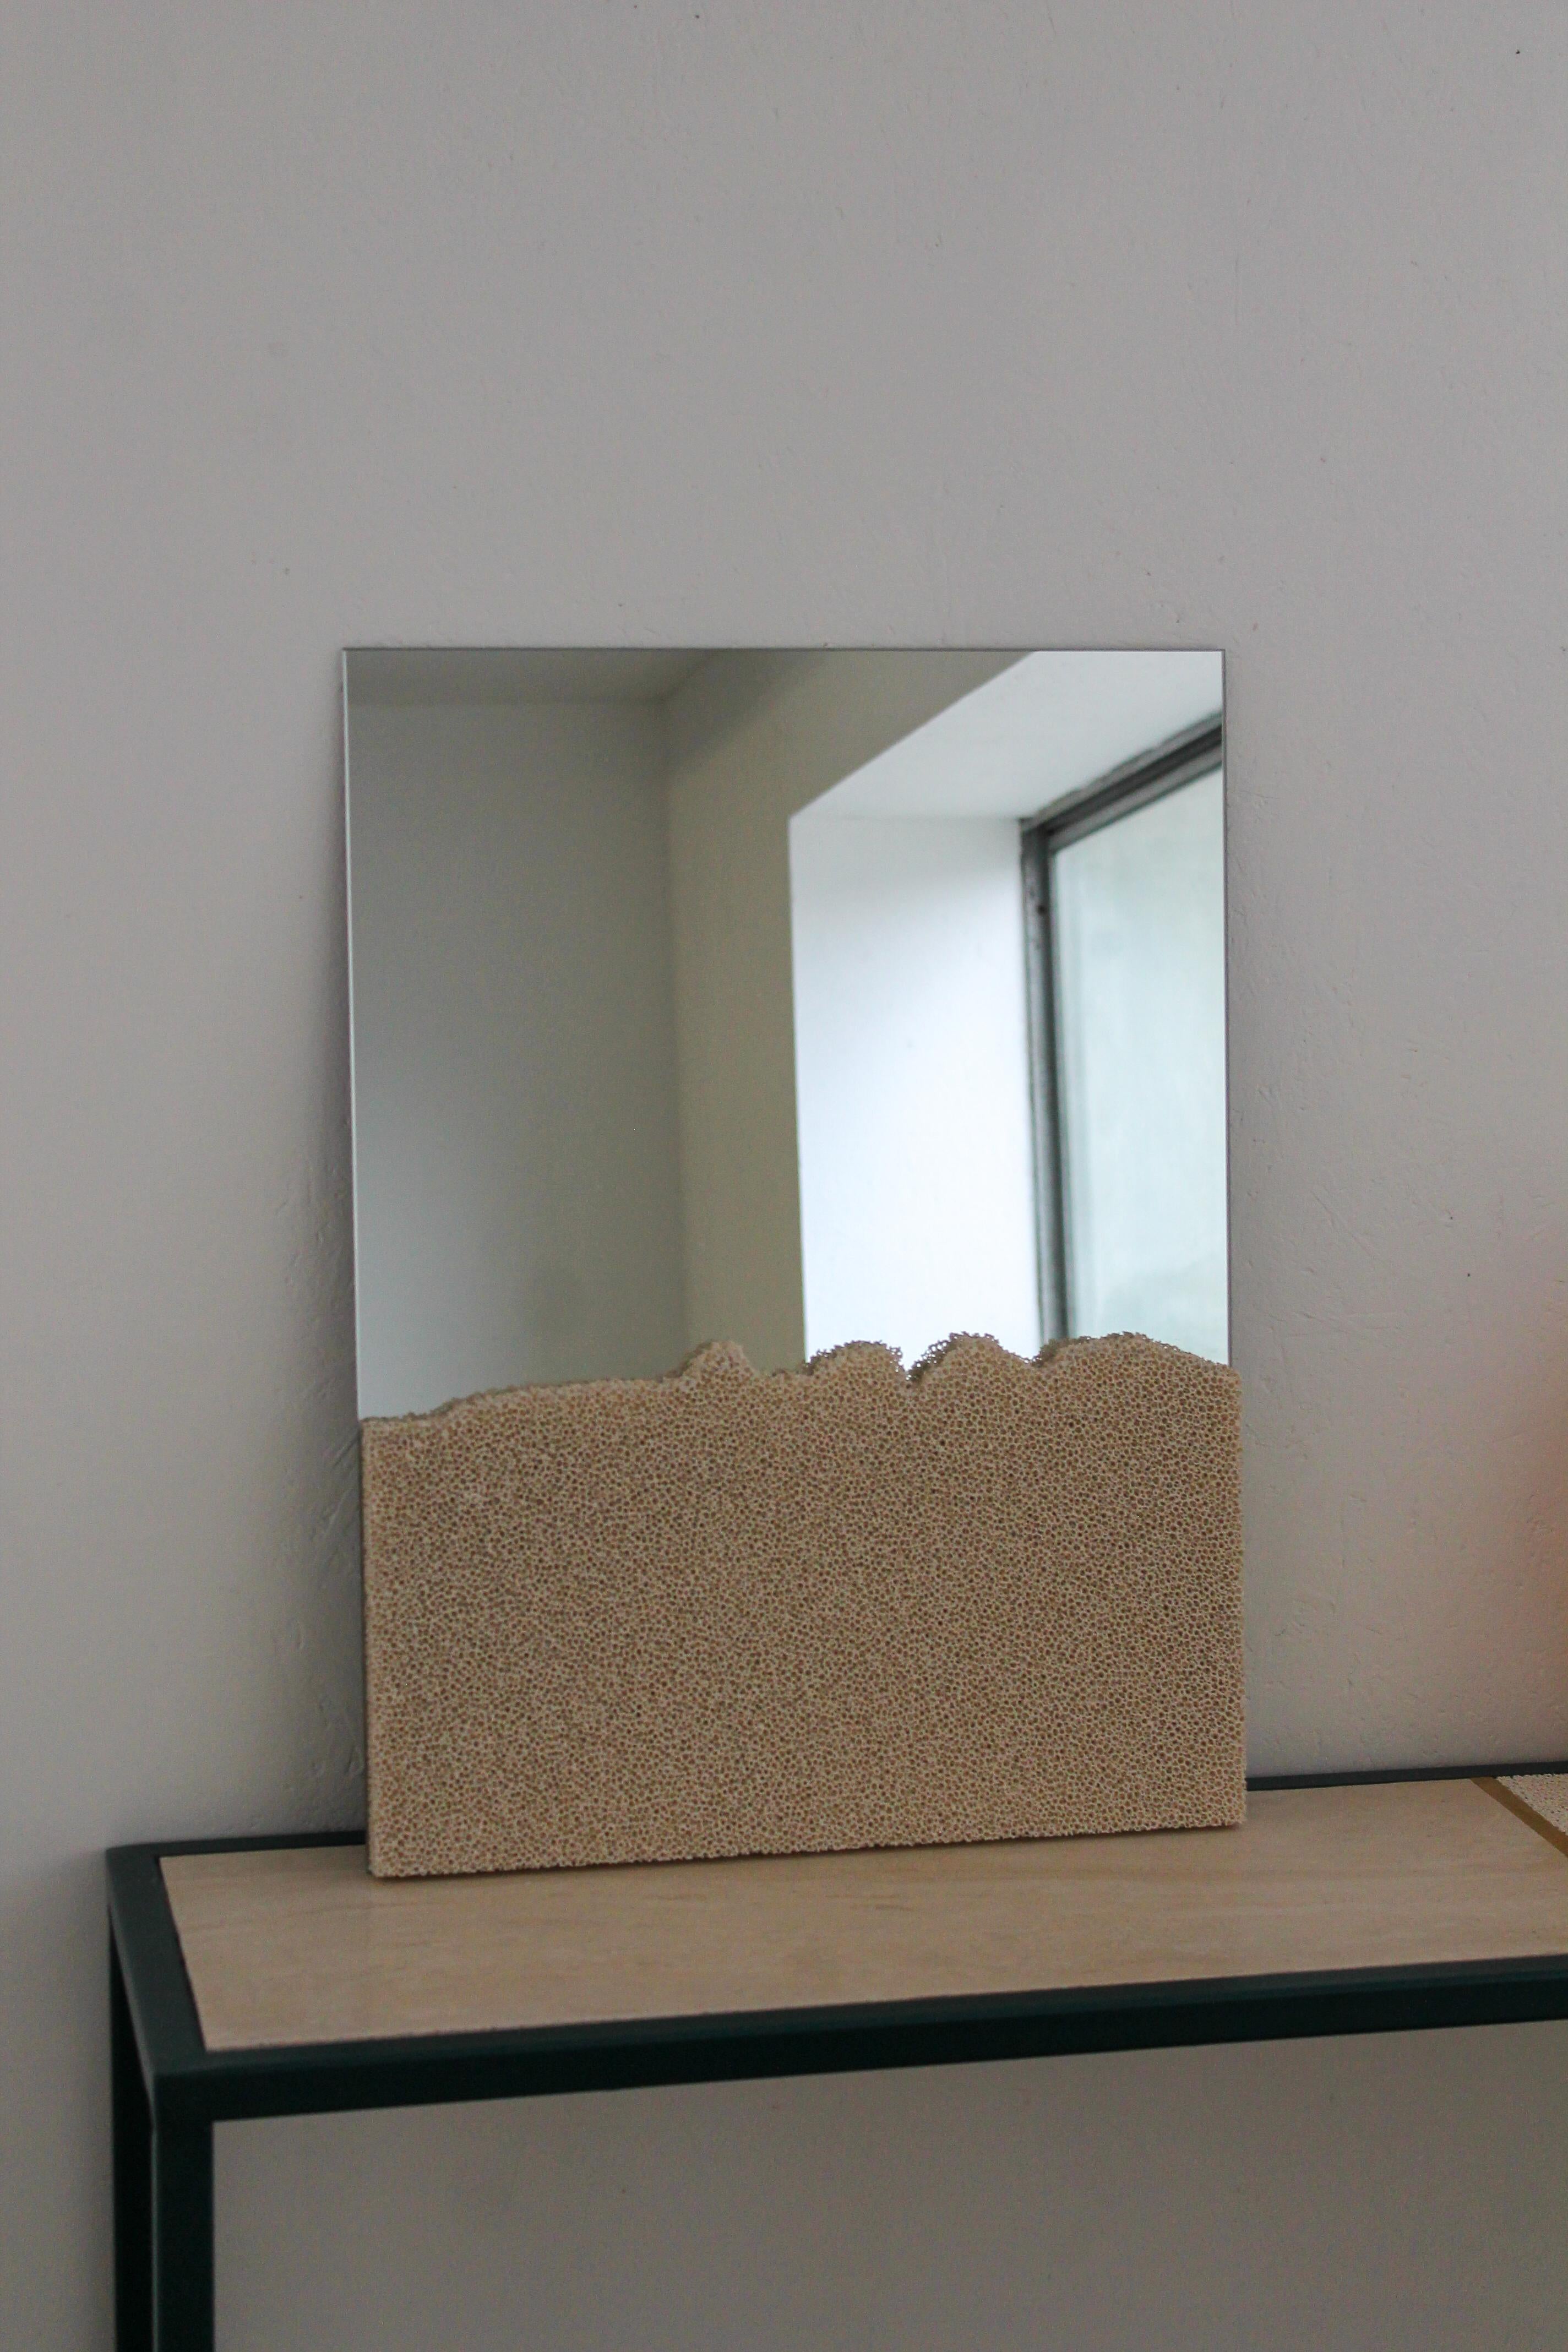 Le SR Mirror est un humble miroir que le designer Jordan Keaney a créé spécialement pour qu'il puisse être suspendu ou debout. Il présente sa signature en mousse de céramique sur le devant, transformant ces miroirs en sculptures fonctionnelles. La